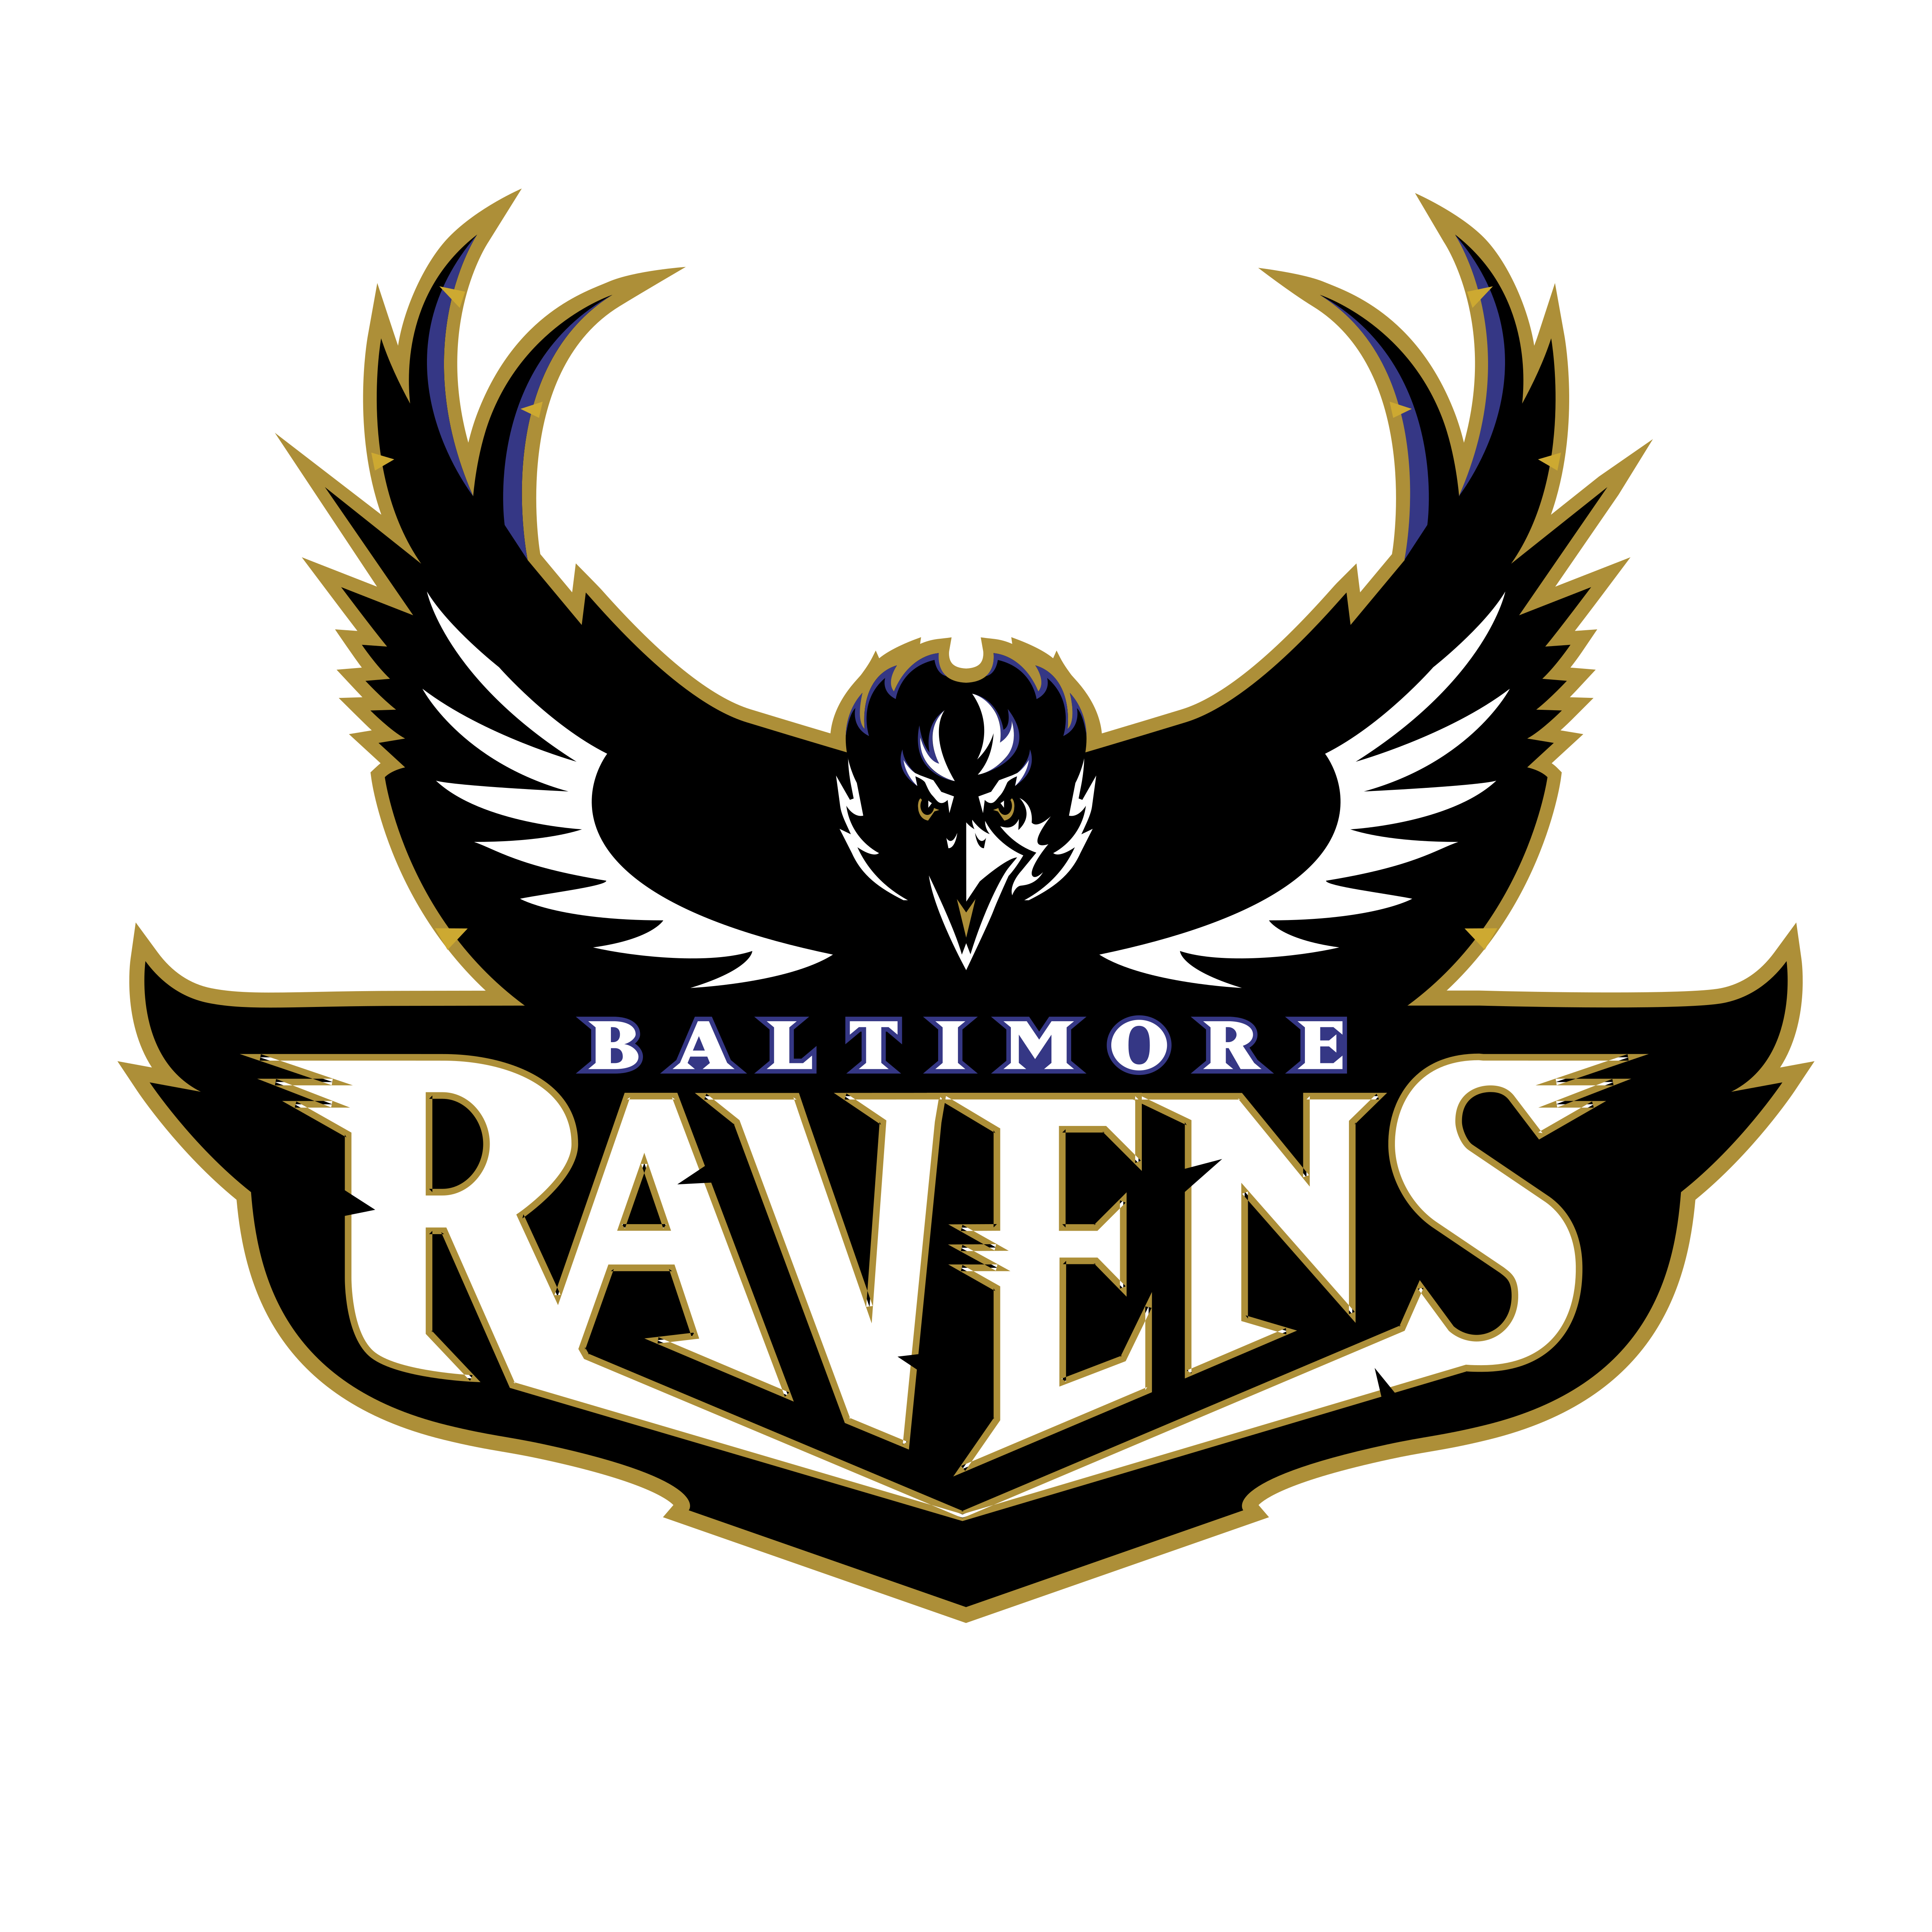 Racen Logo - Baltimore Ravens – Logos Download